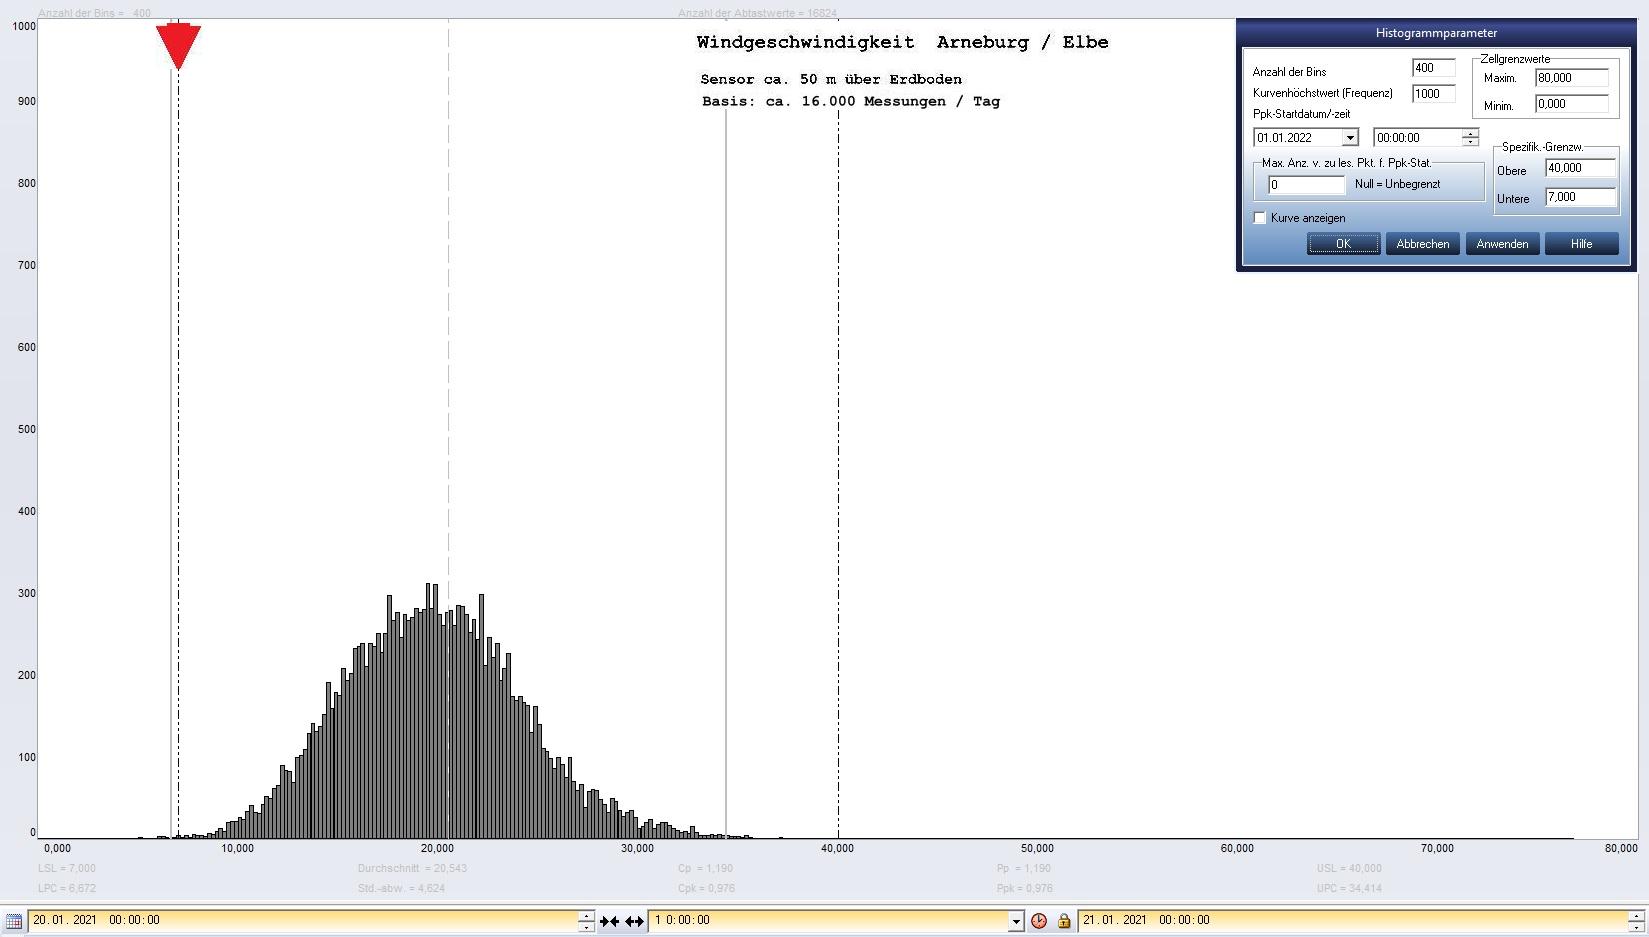 Arneburg Tages-Histogramm Winddaten, 20.01.2021
  Histogramm, Sensor auf Gebude, ca. 50 m ber Erdboden, Basis: 5s-Aufzeichnung